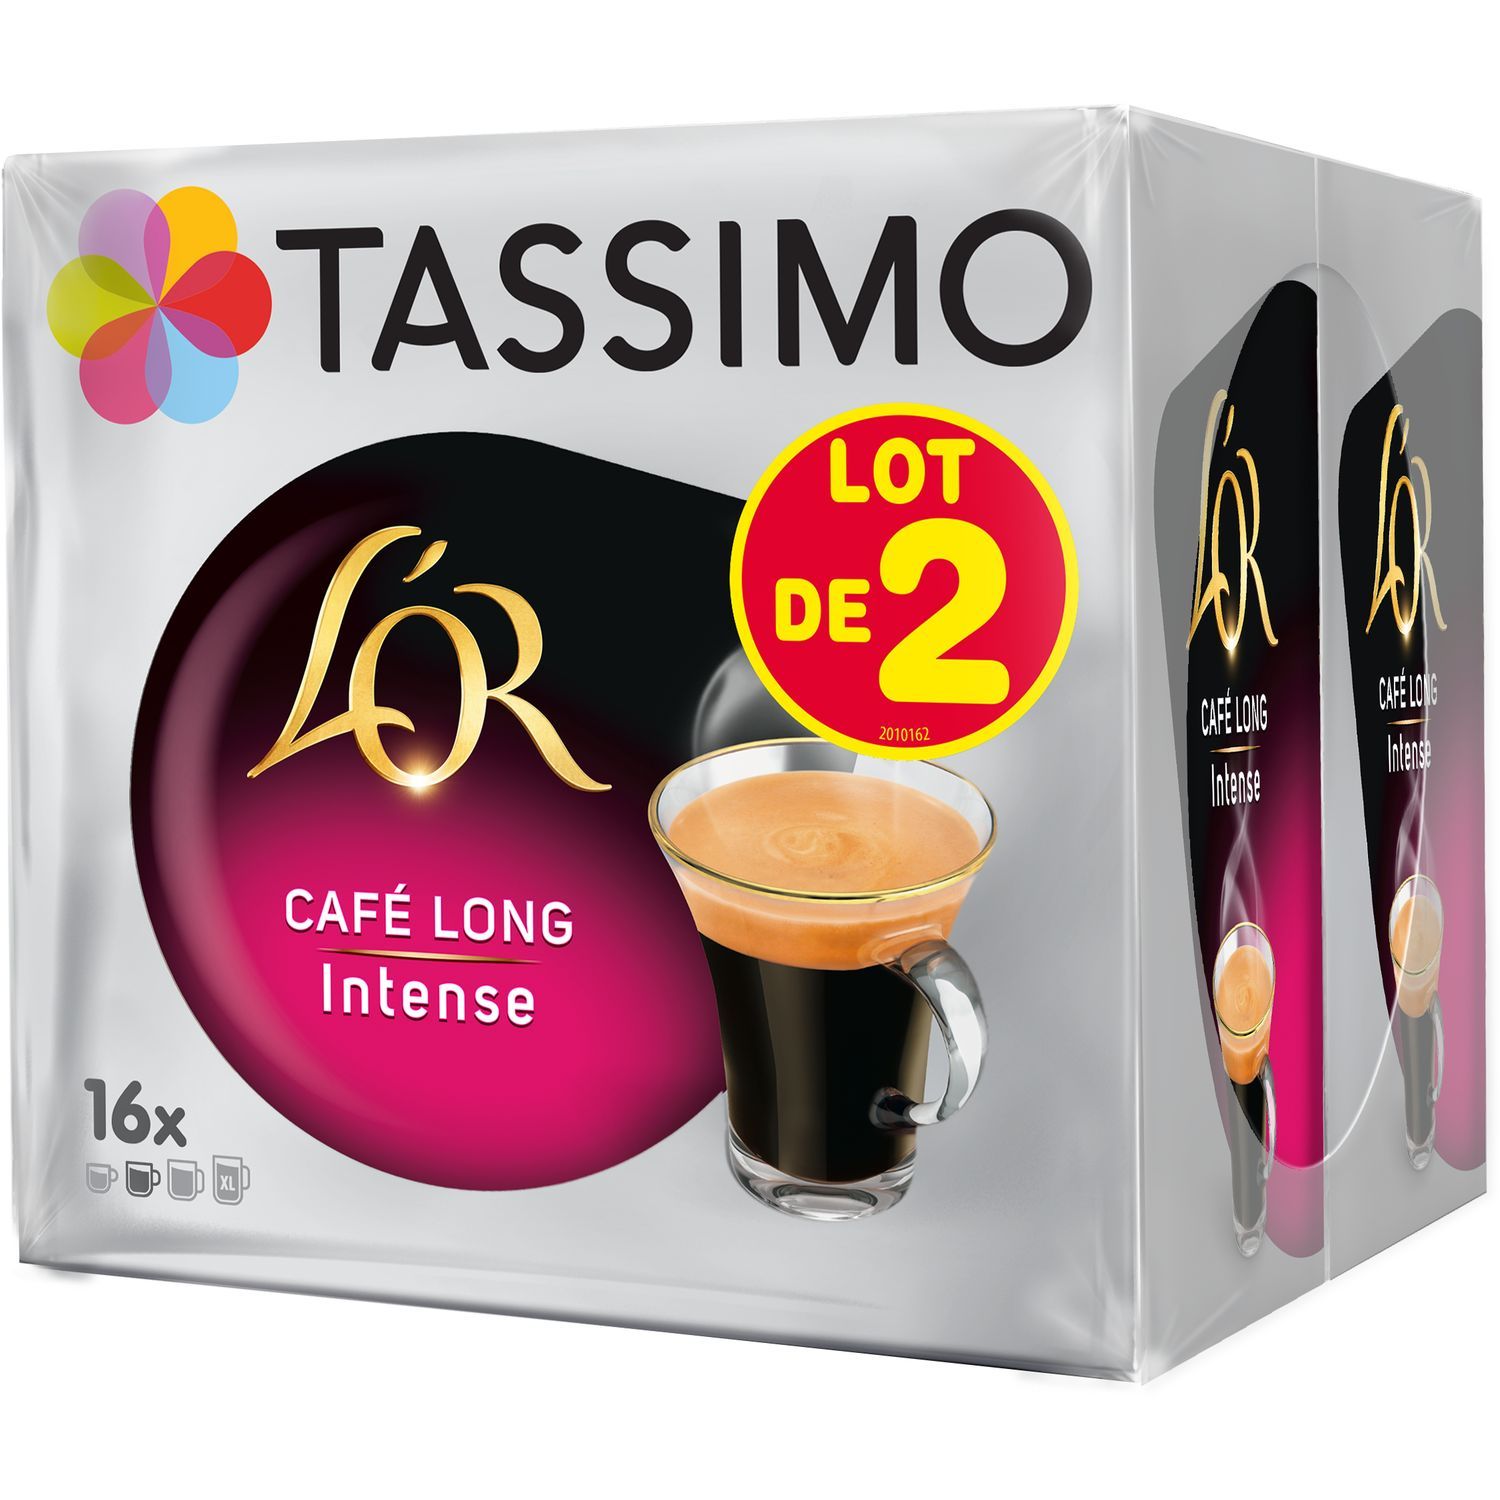 Promo Dosettes de café tassimo chez Auchan Supermarché